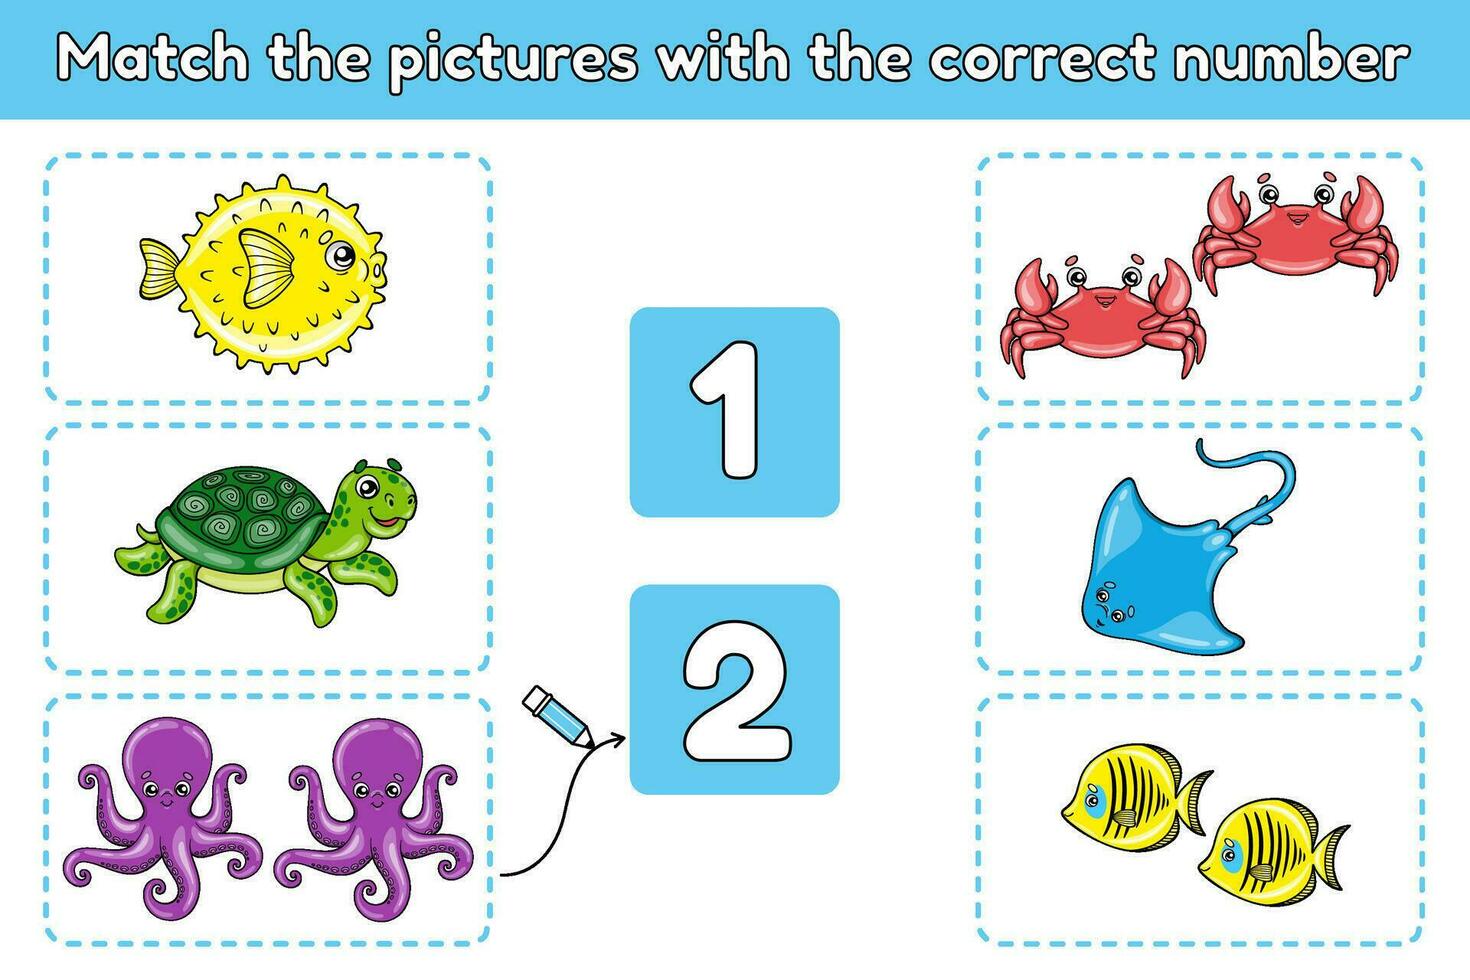 matemáticas educativo juego para niños con mar animales partido el imágenes con el correcto número. contando hoja de cálculo para preescolar y colegio niños. dibujos animados tortugas, cangrejos, pulpos y otros. vector. vector